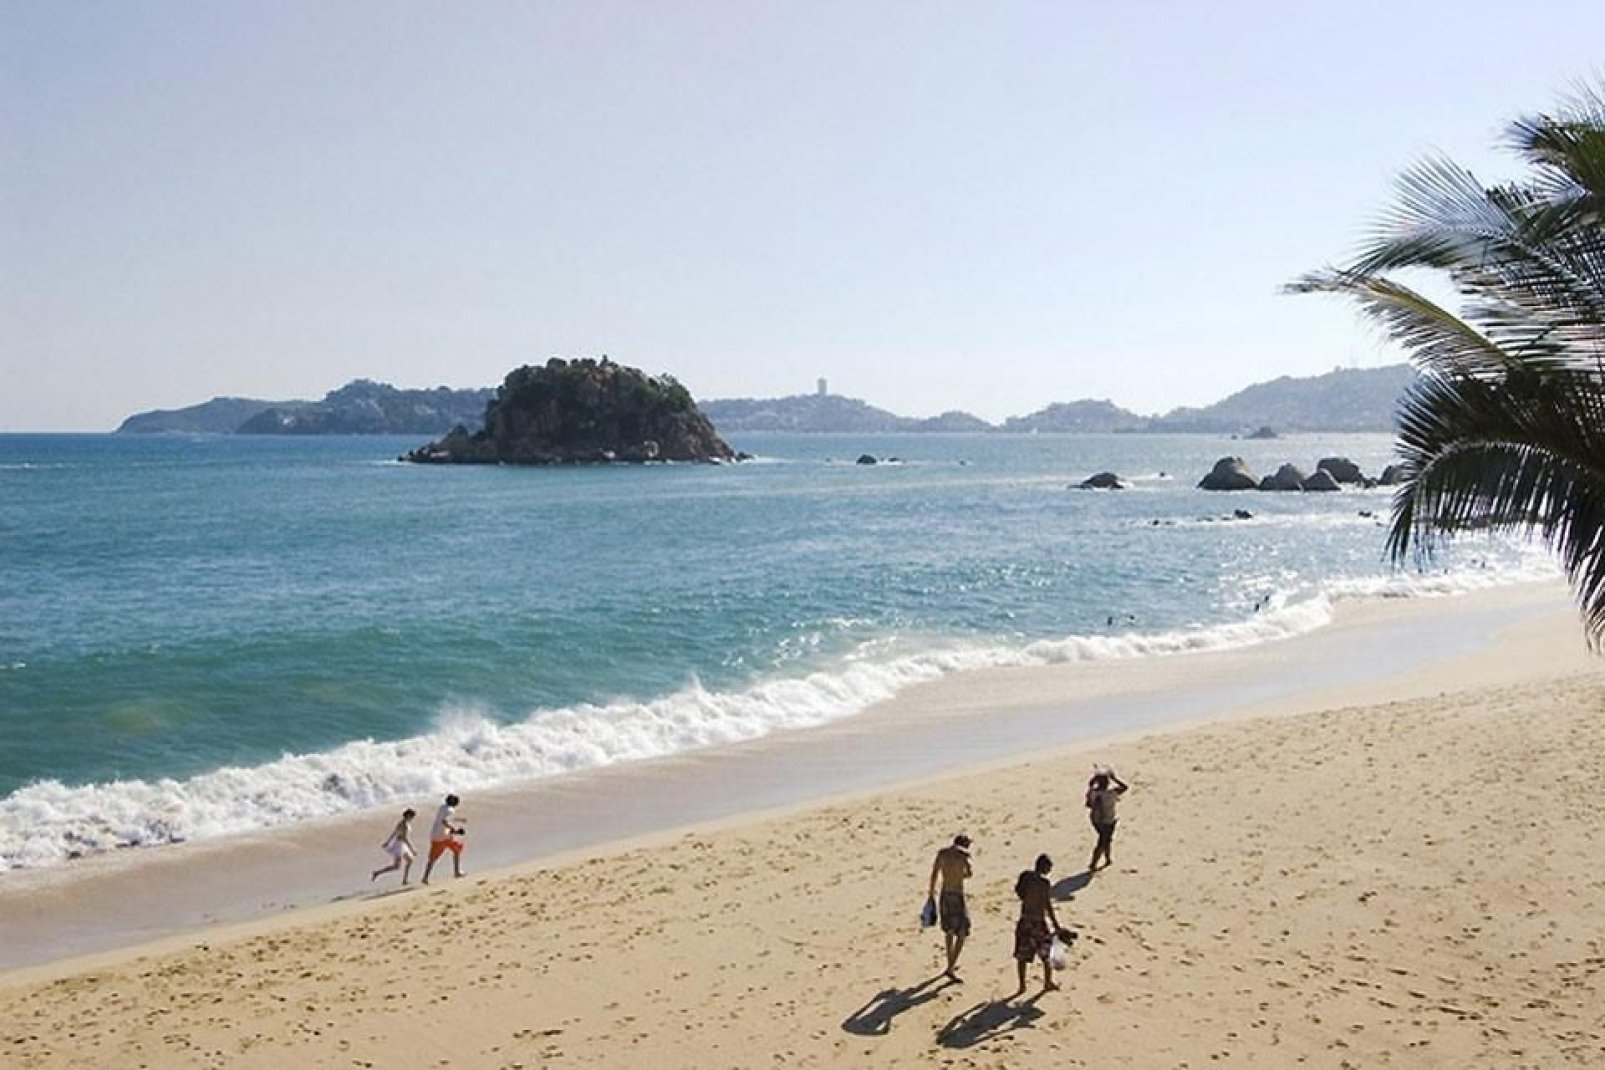 Les plages d'Acapulco permettent aux touristes de s'isoler du chaos urbain.